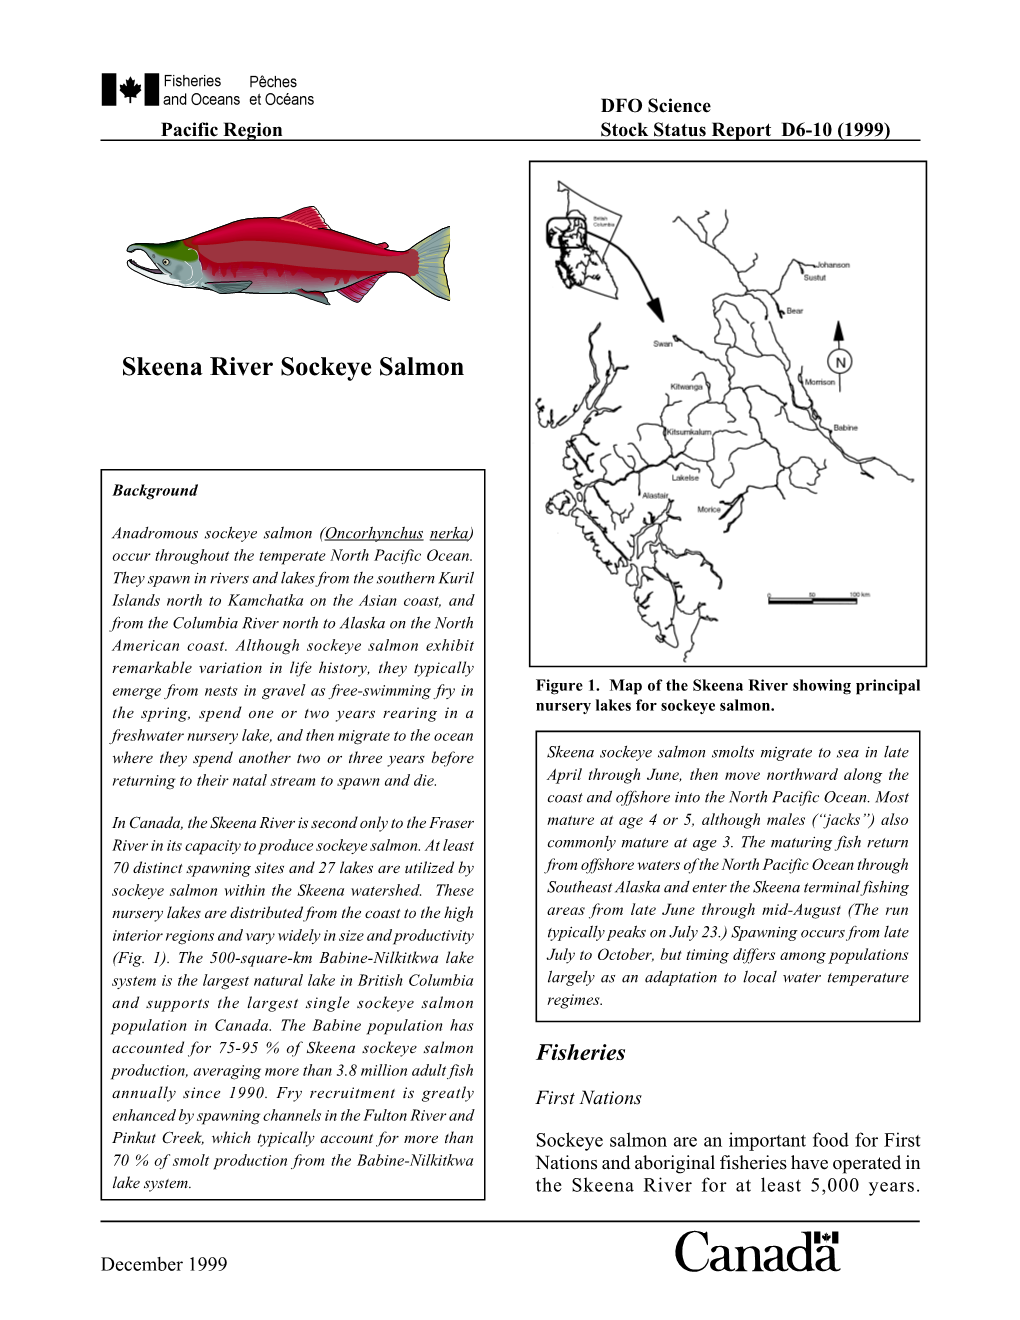 Skeena River Sockeye Salmon